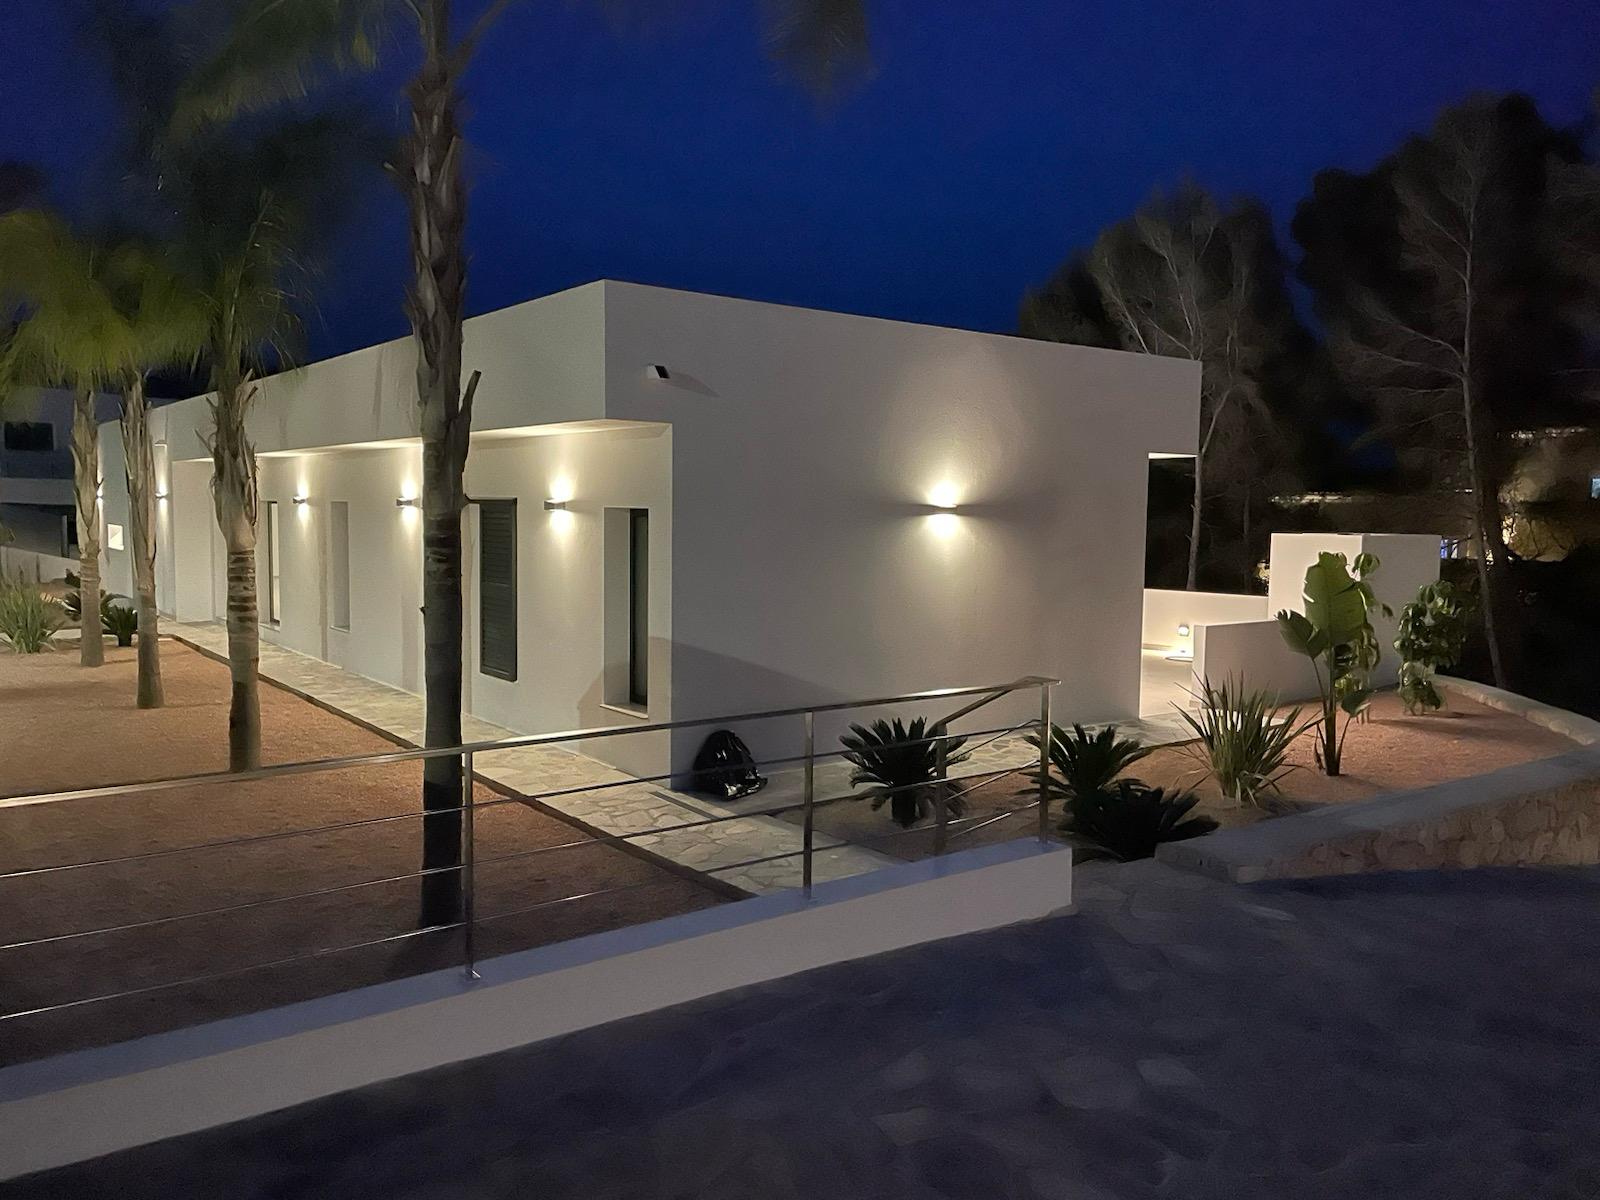 Entdecken Sie diese atemberaubende, kürzlich fertiggestellte moderne Villa in Benissa